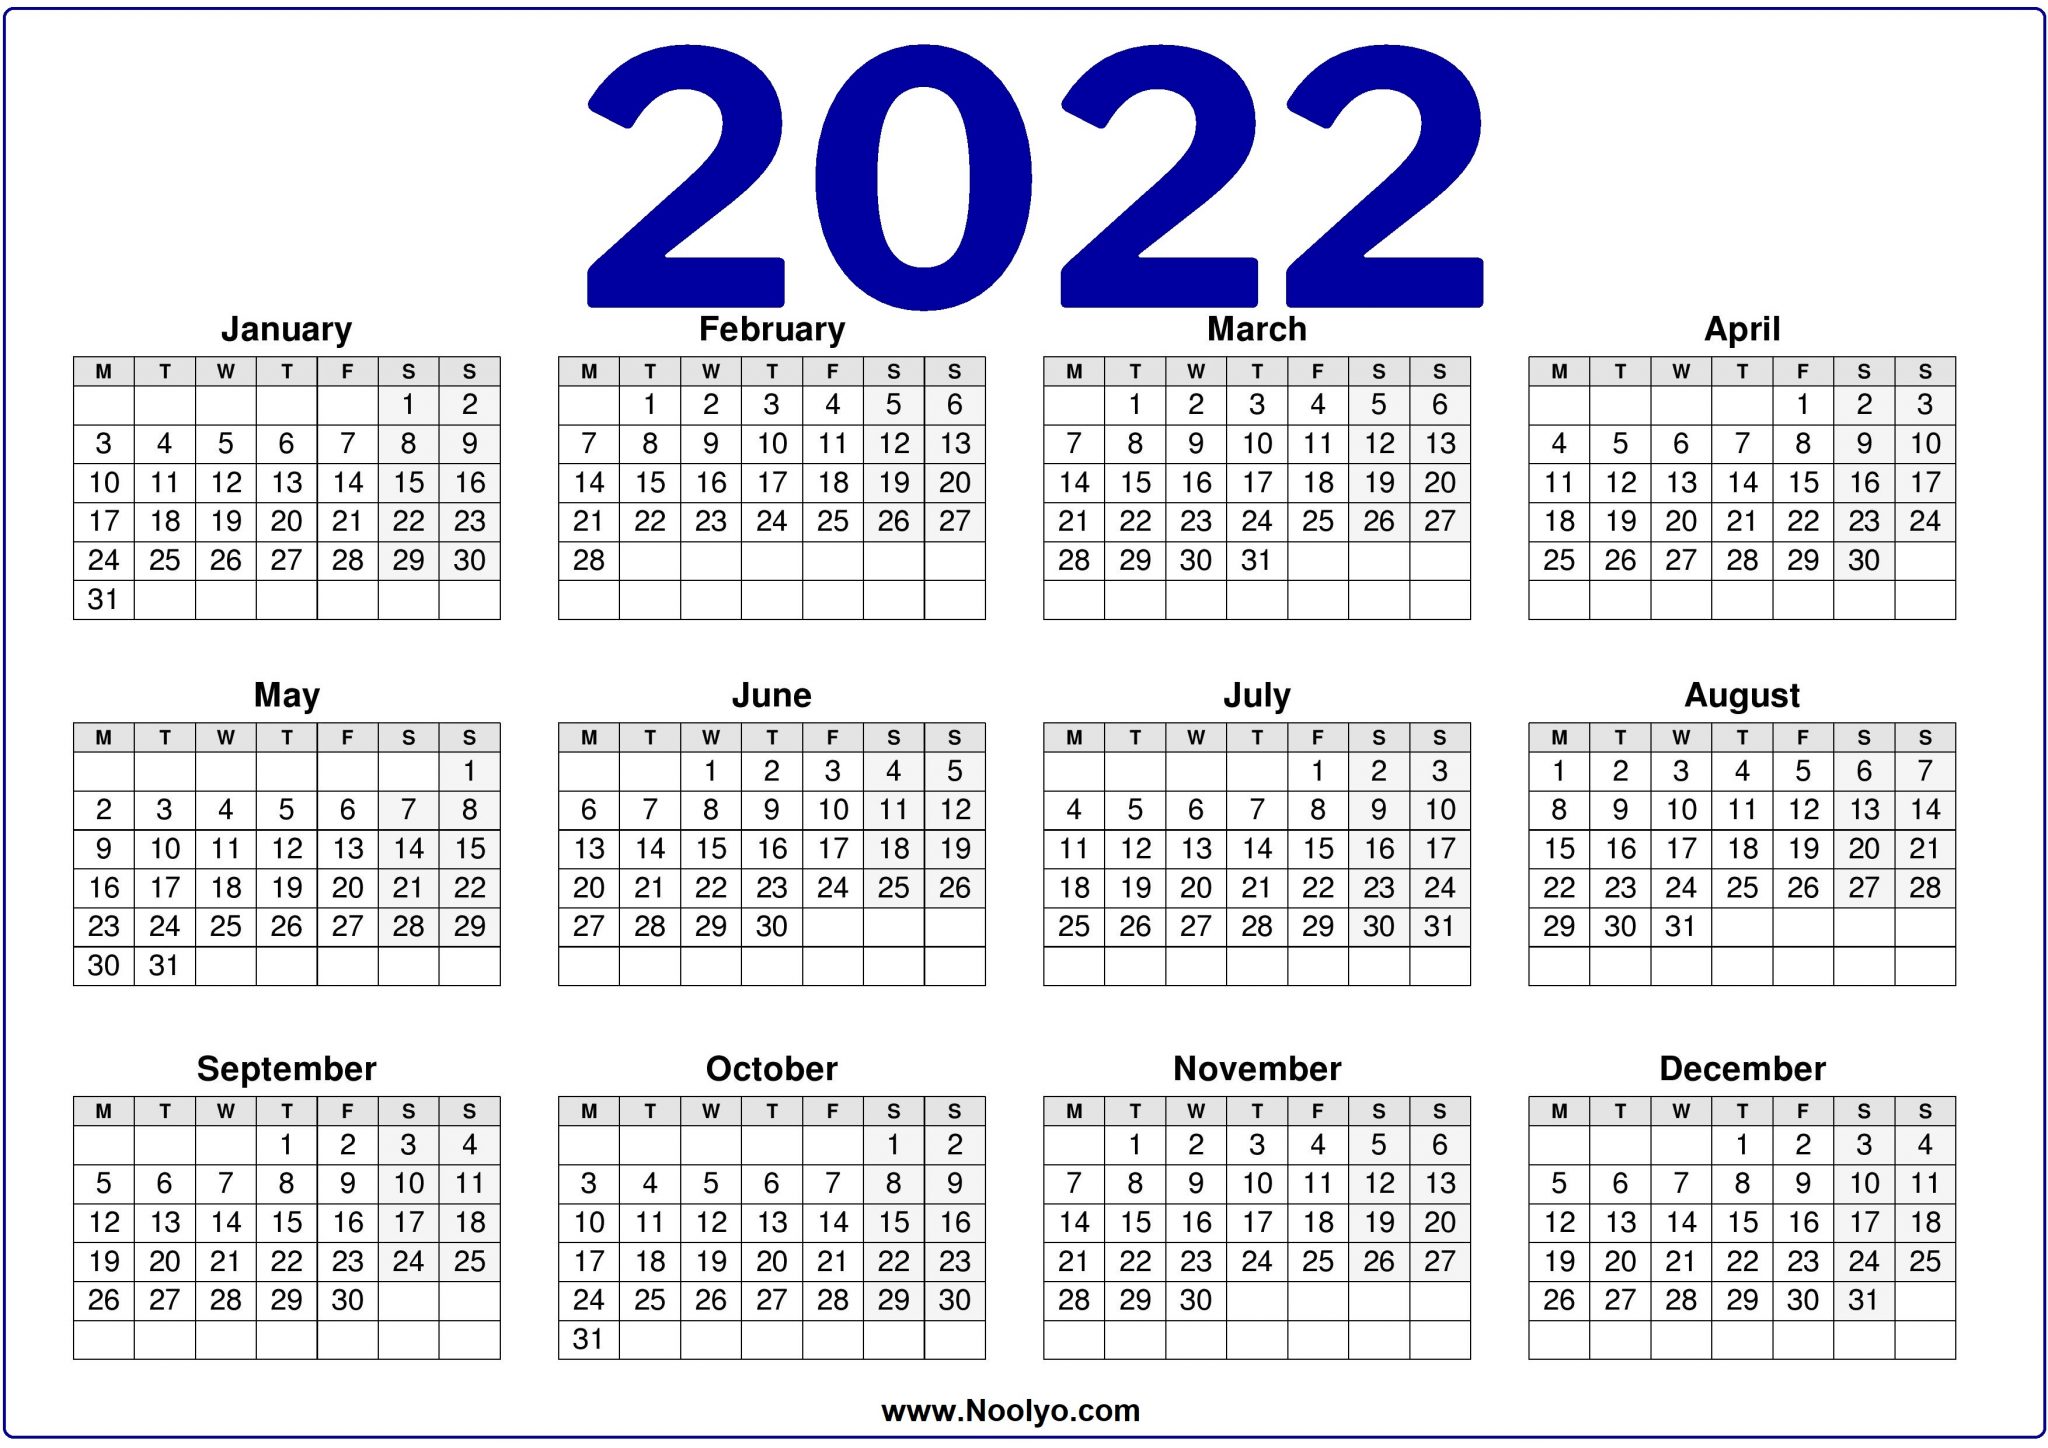 free-2022-calendars-horizontal-printable-a4-size-noolyo-com-calendars